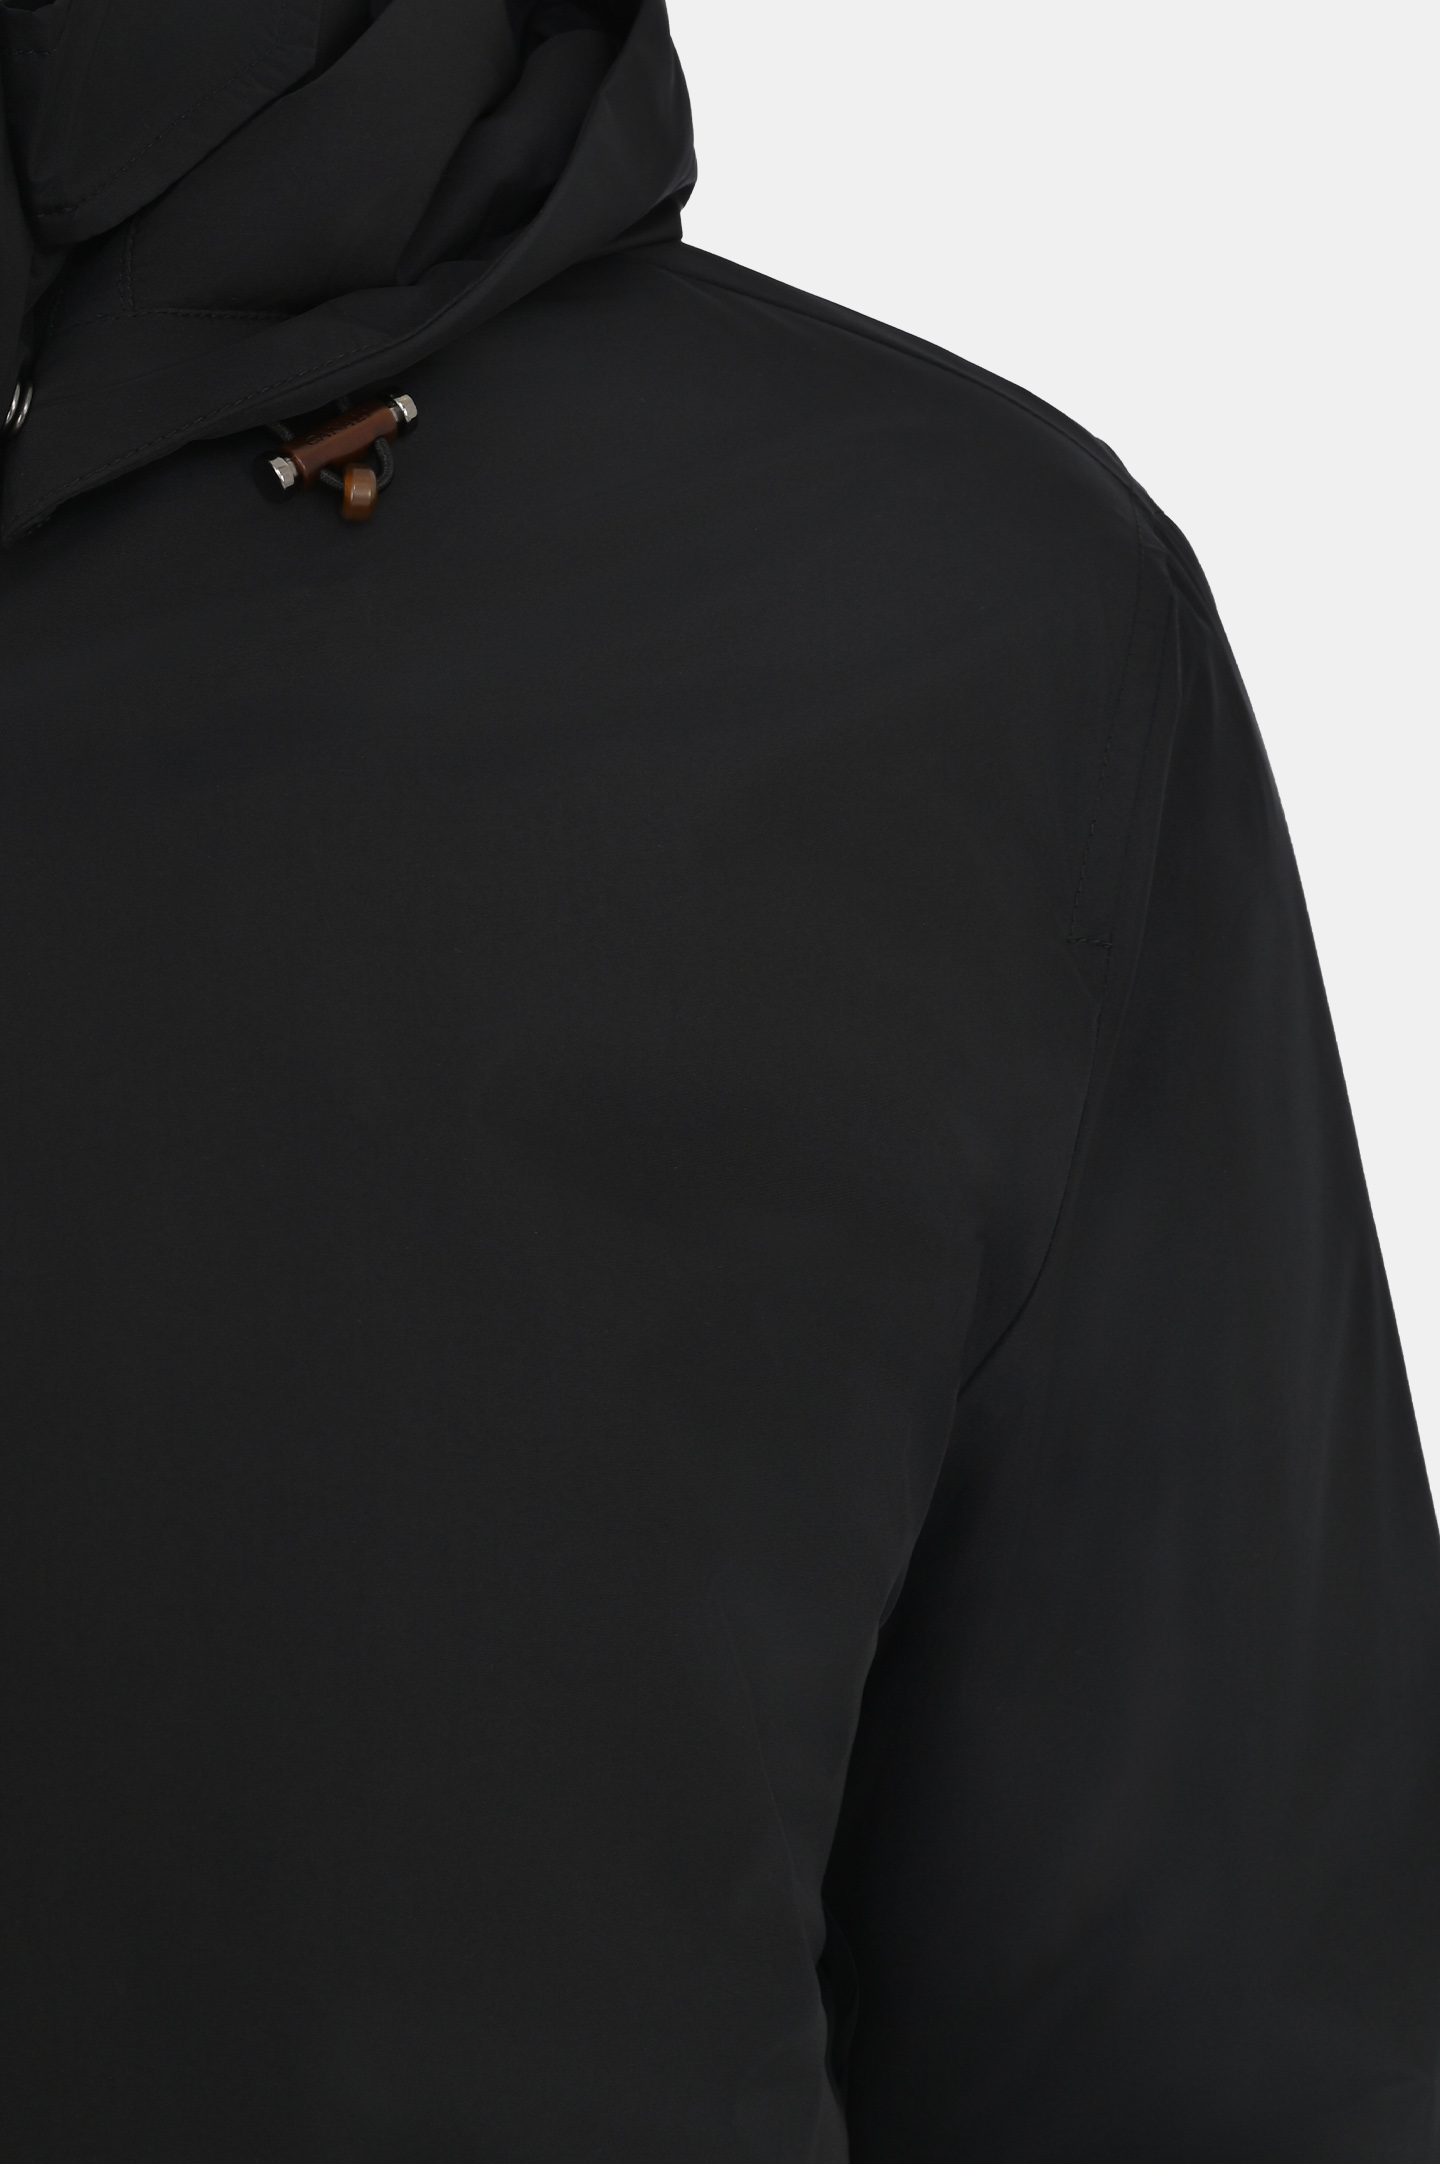 Куртка CANALI SG01774 O40841, цвет: Черный, Мужской